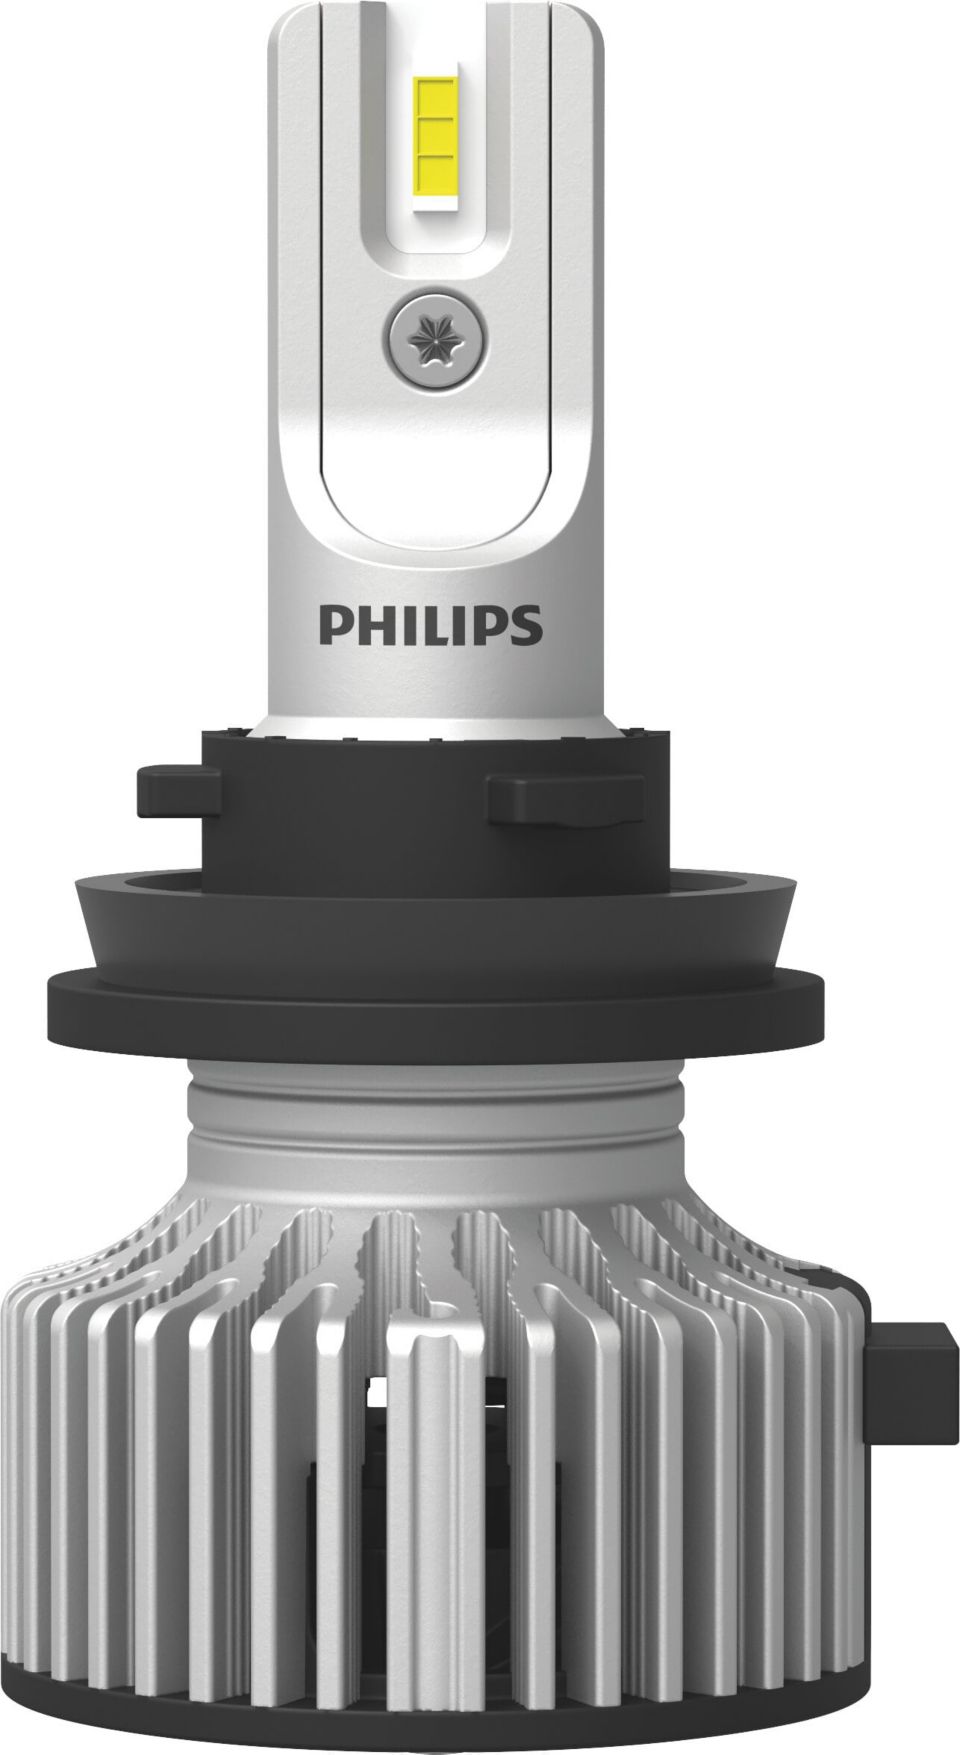 Philips Fog Lamp Light Bulb Sport Lamp Halogen Headlight Bulb